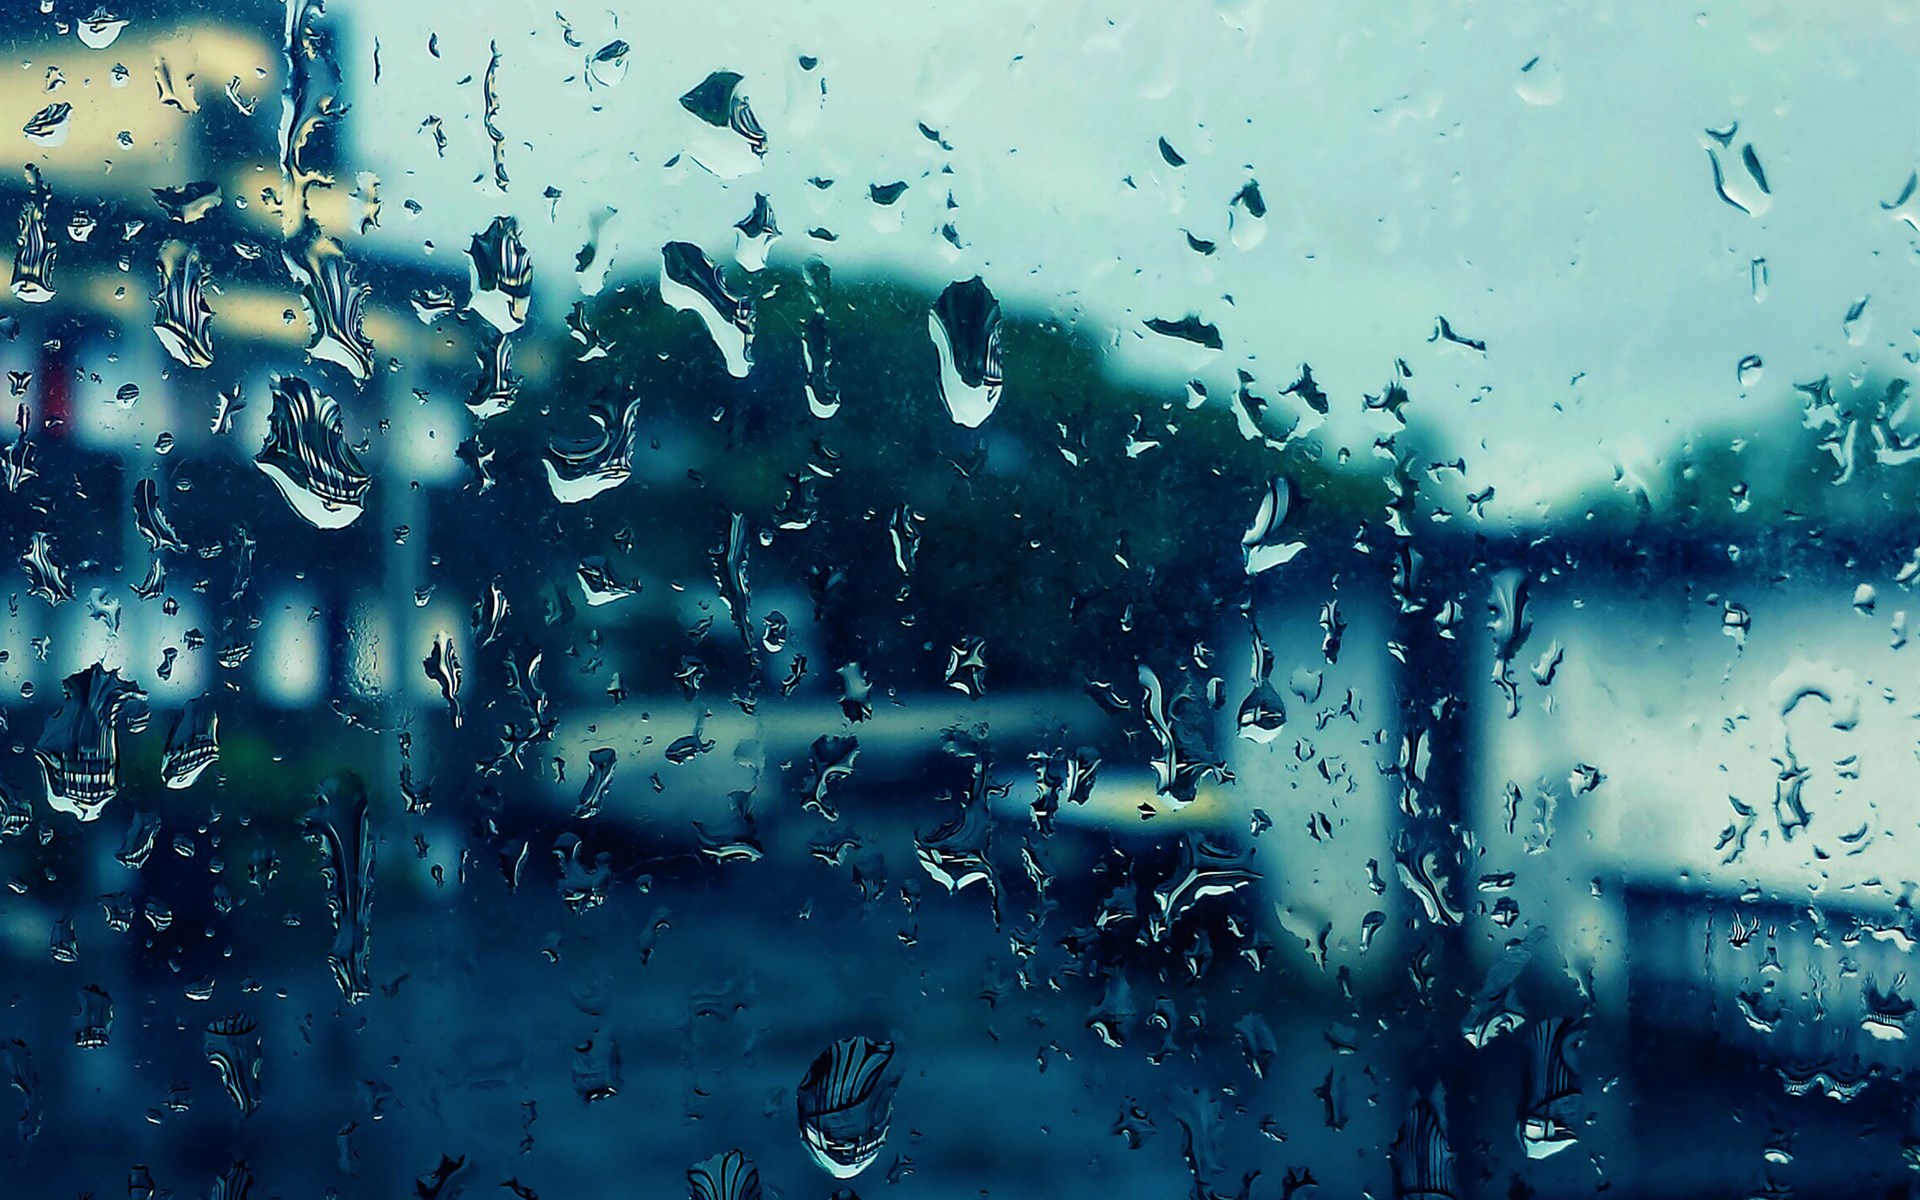 下雨的图片雨天窗户唯美雨滴图片 下雨图片 优美图